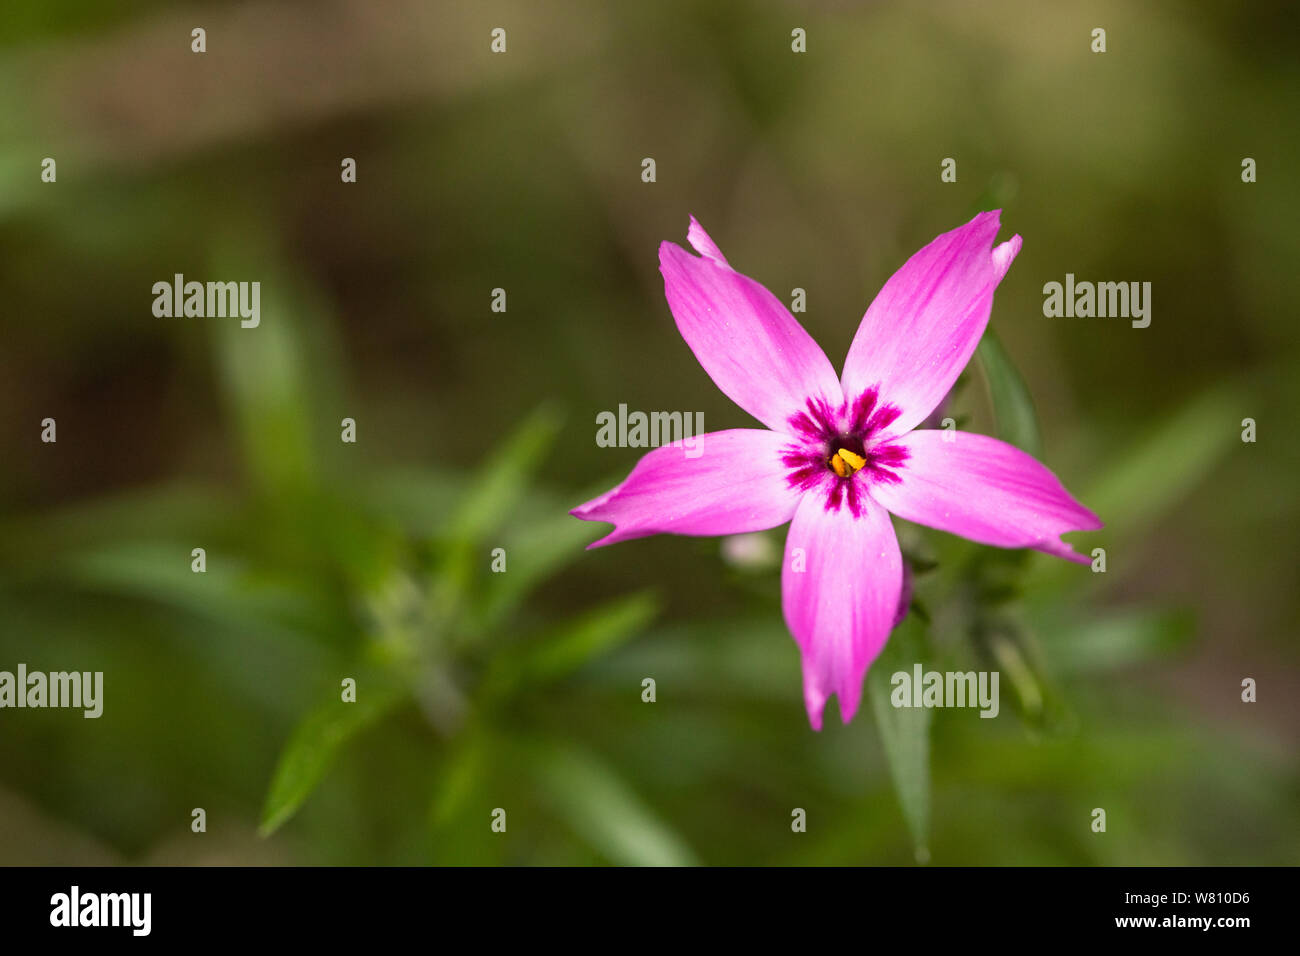 Nahaufnahme eines einzelnen lila Blüte im Vordergrund der blurried verlässt. Stockfoto